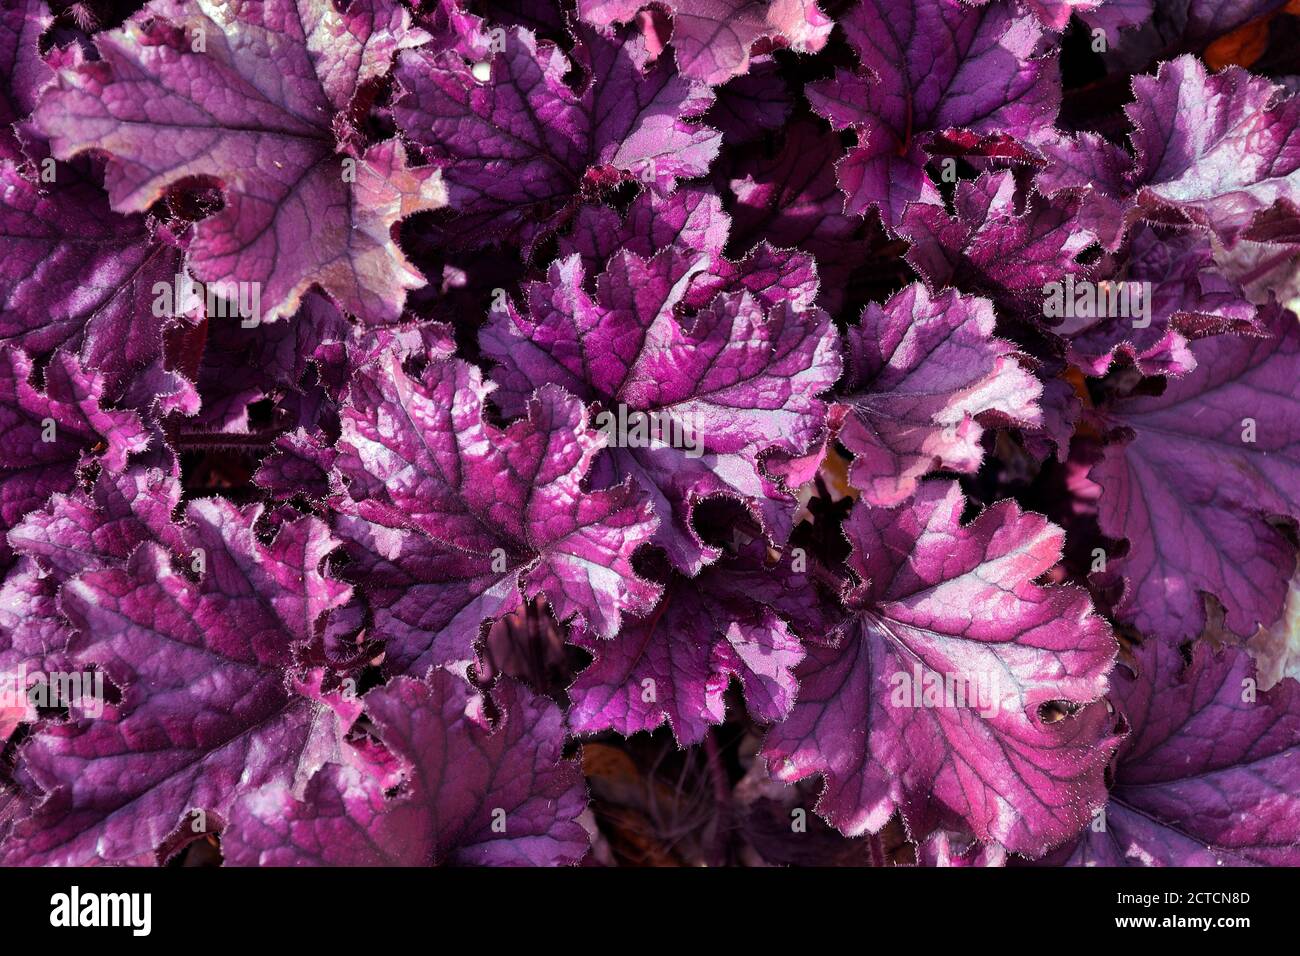 Violette Blätter der ornamentalen immergrünen, krautigen Staudenpflanze Heuchera Hybrid (Heuchera x hybrida 'Forever Purple') in der Familie der Saxifragaceae. C Stockfoto